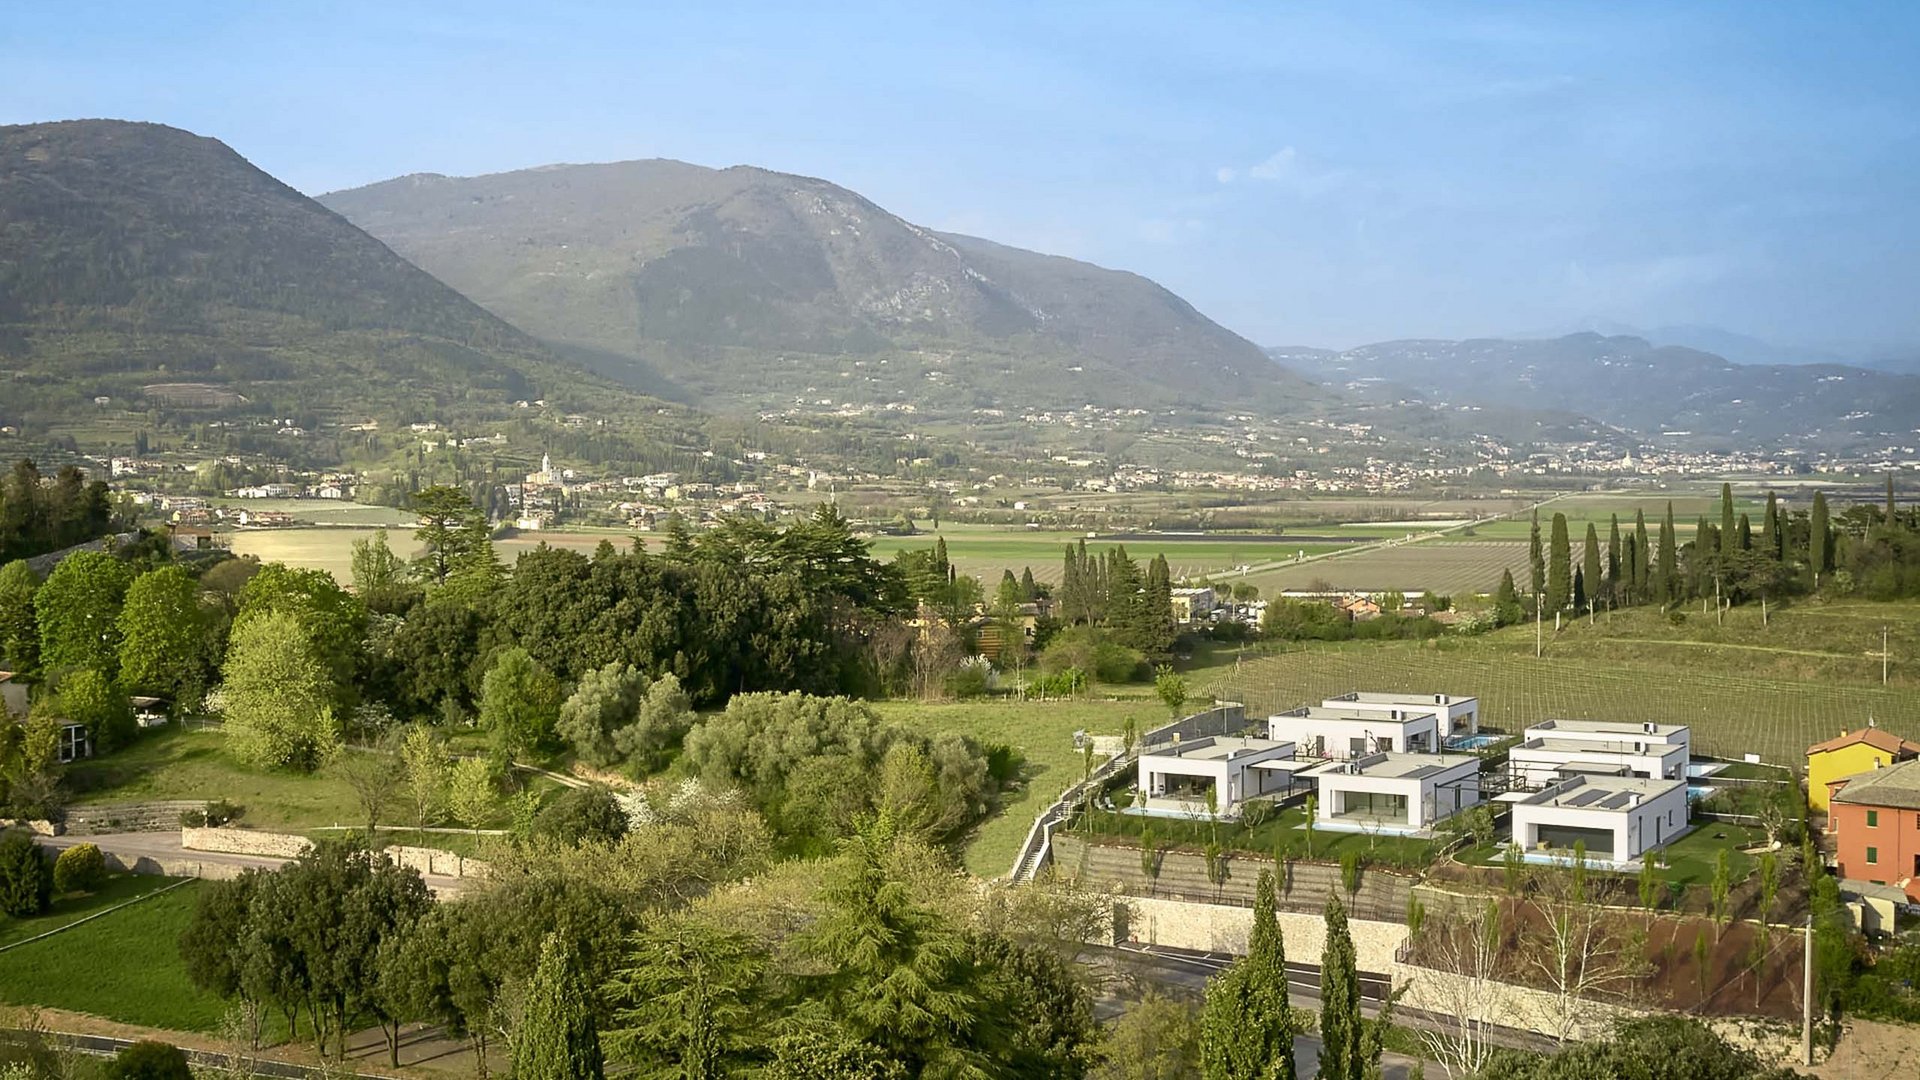 Costermano near Lake Garda: a strategic location